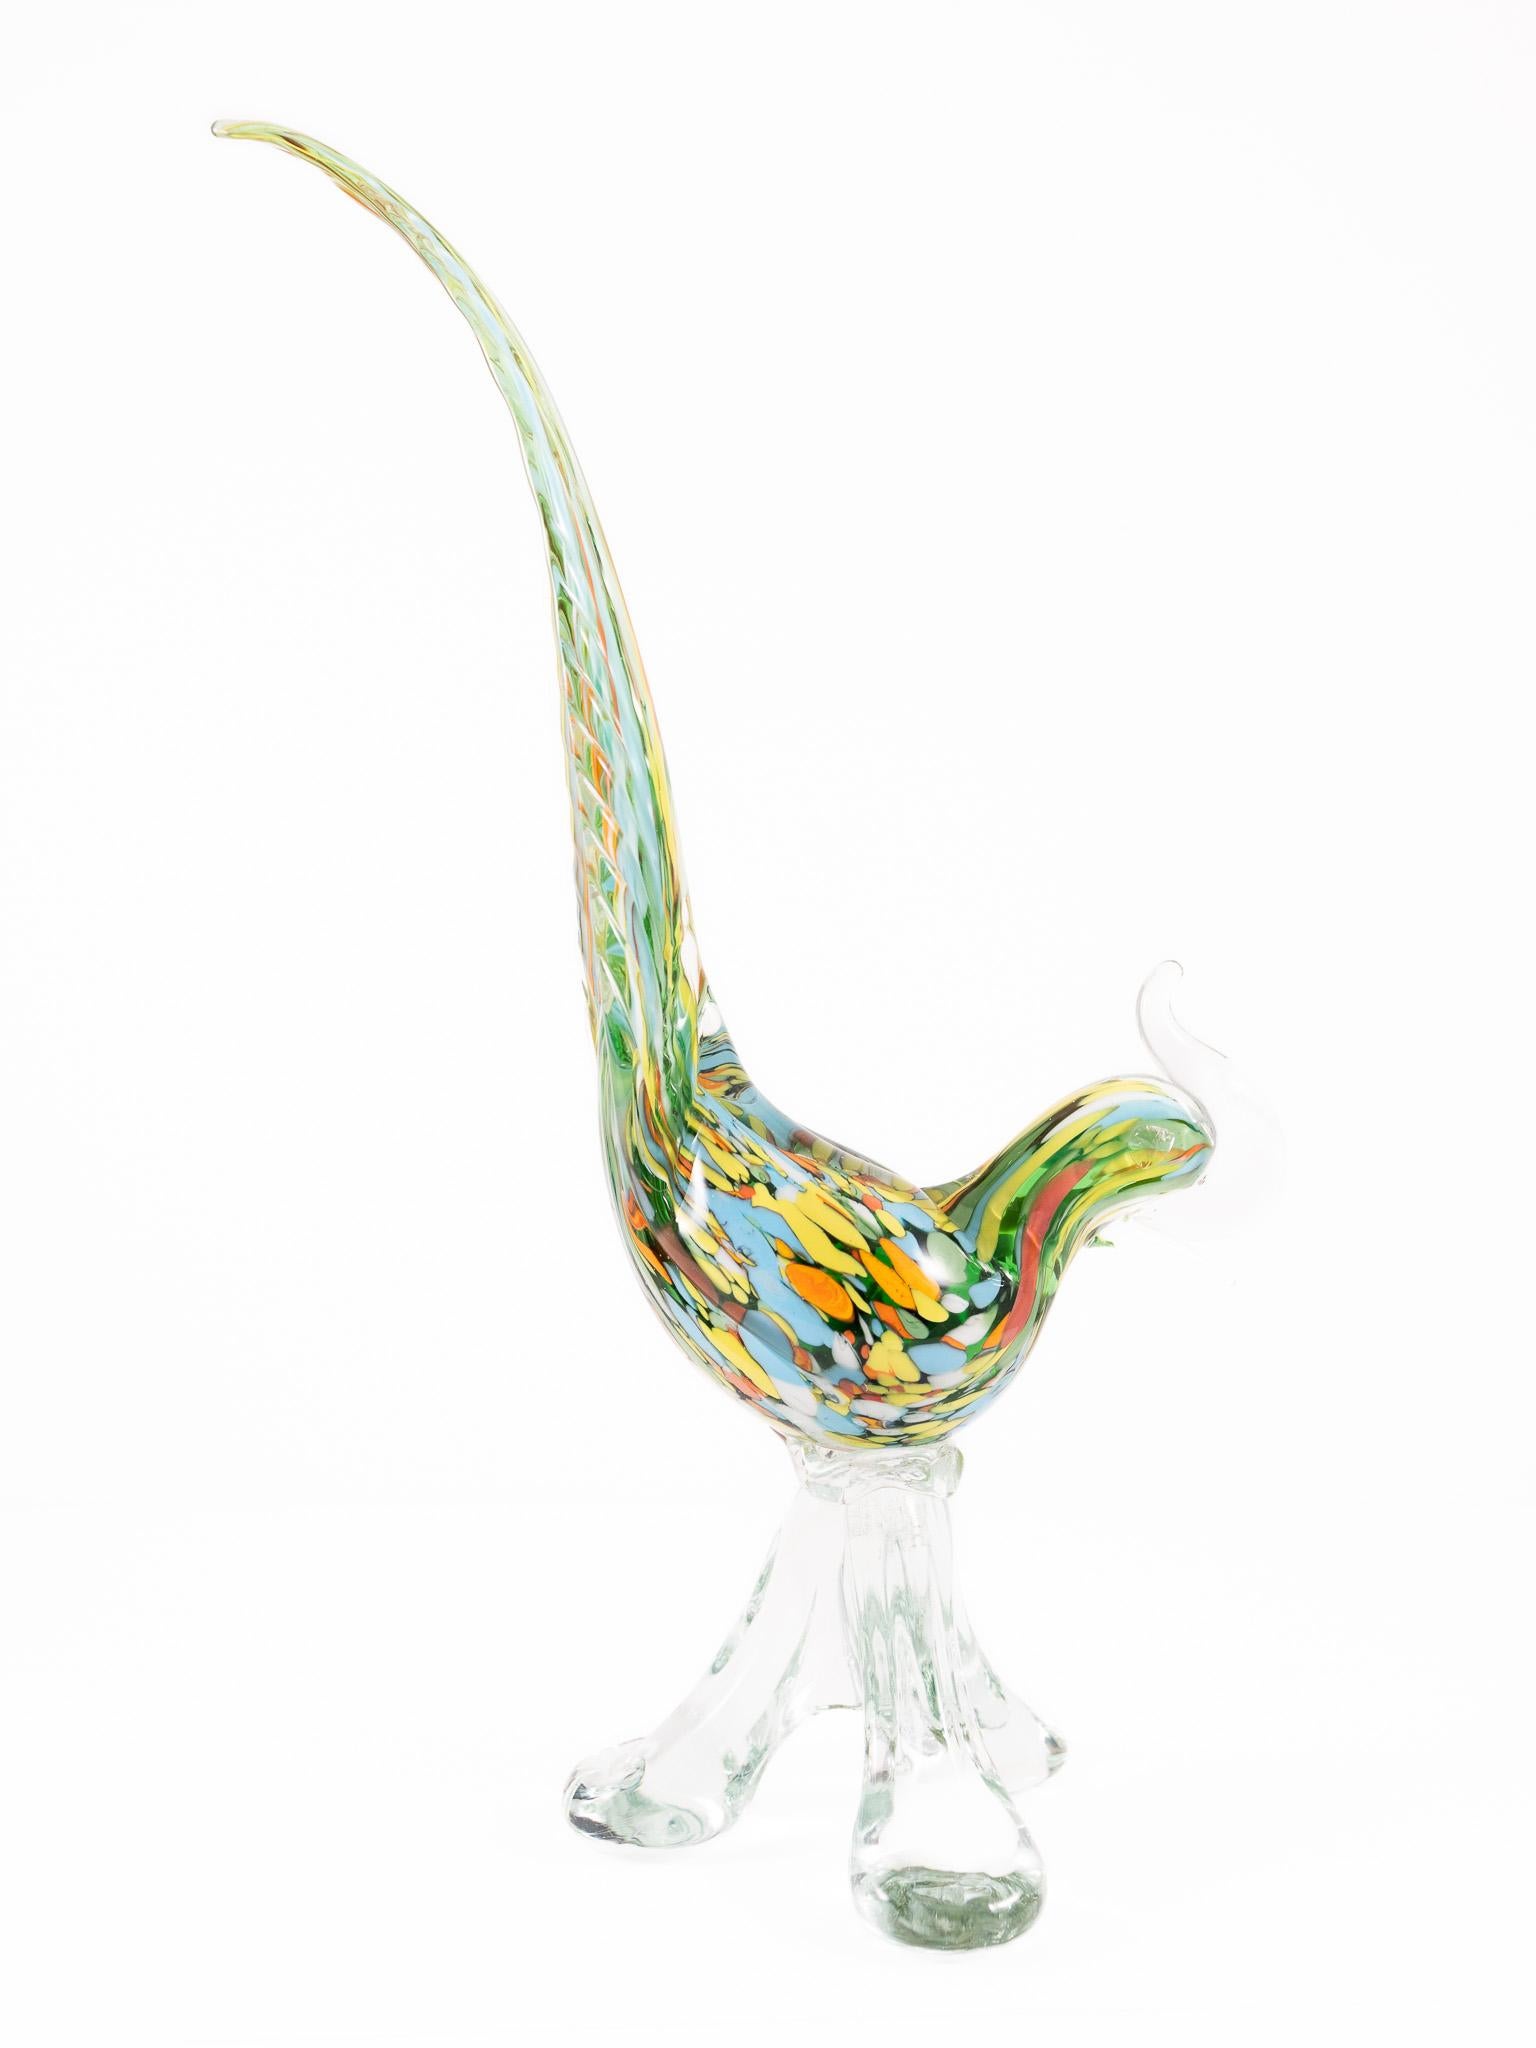 20th Century Venetian Murano Glass Peacock
HxWxD: 16